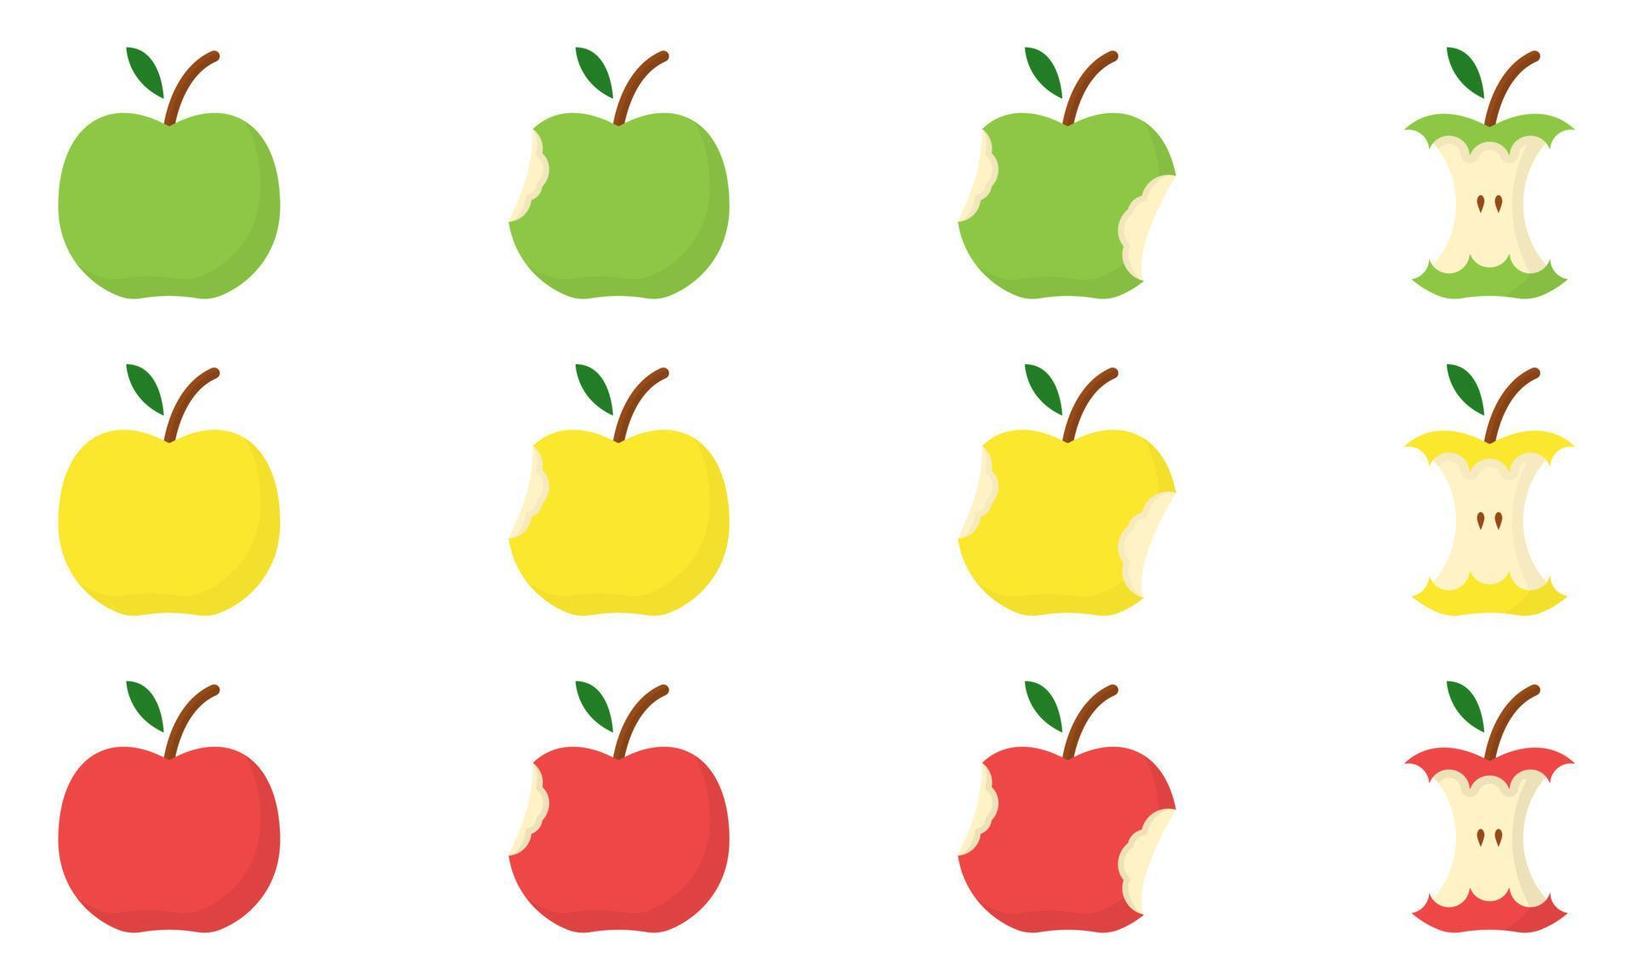 ensemble de concept de stade de morsure de pomme jaune, vert, rouge. étape de manger la pomme entière à la moitié et au noyau. aliments biologiques frais et sains. illustration vectorielle isolée. vecteur